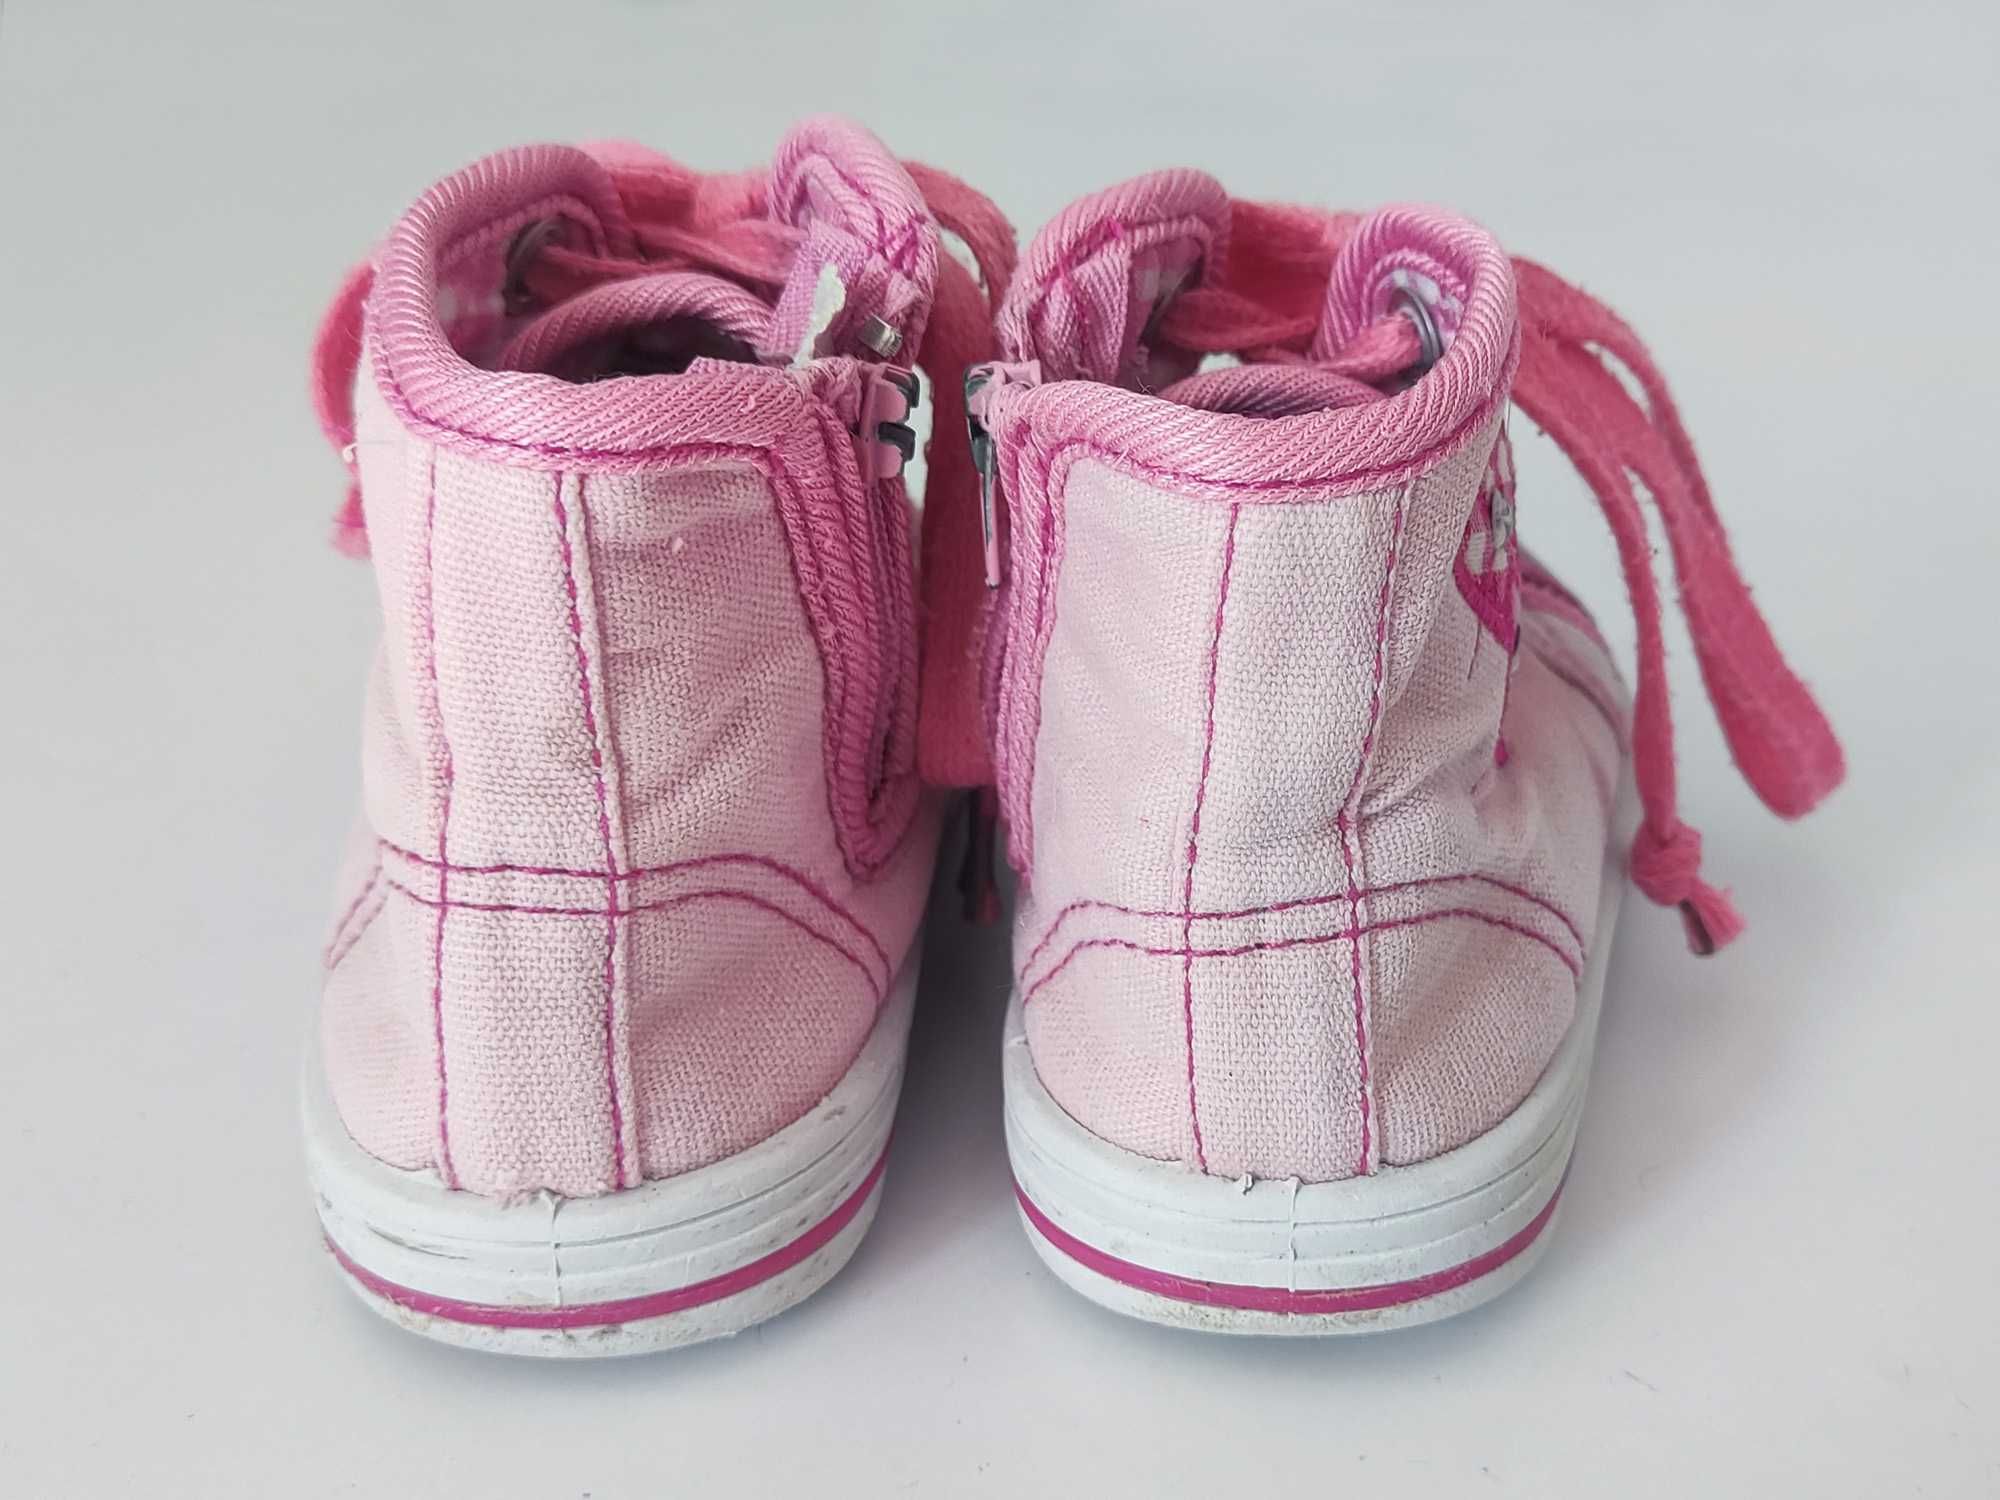 22 Trampki długie WALKY Tenisówki różowe brokat cekiny buty